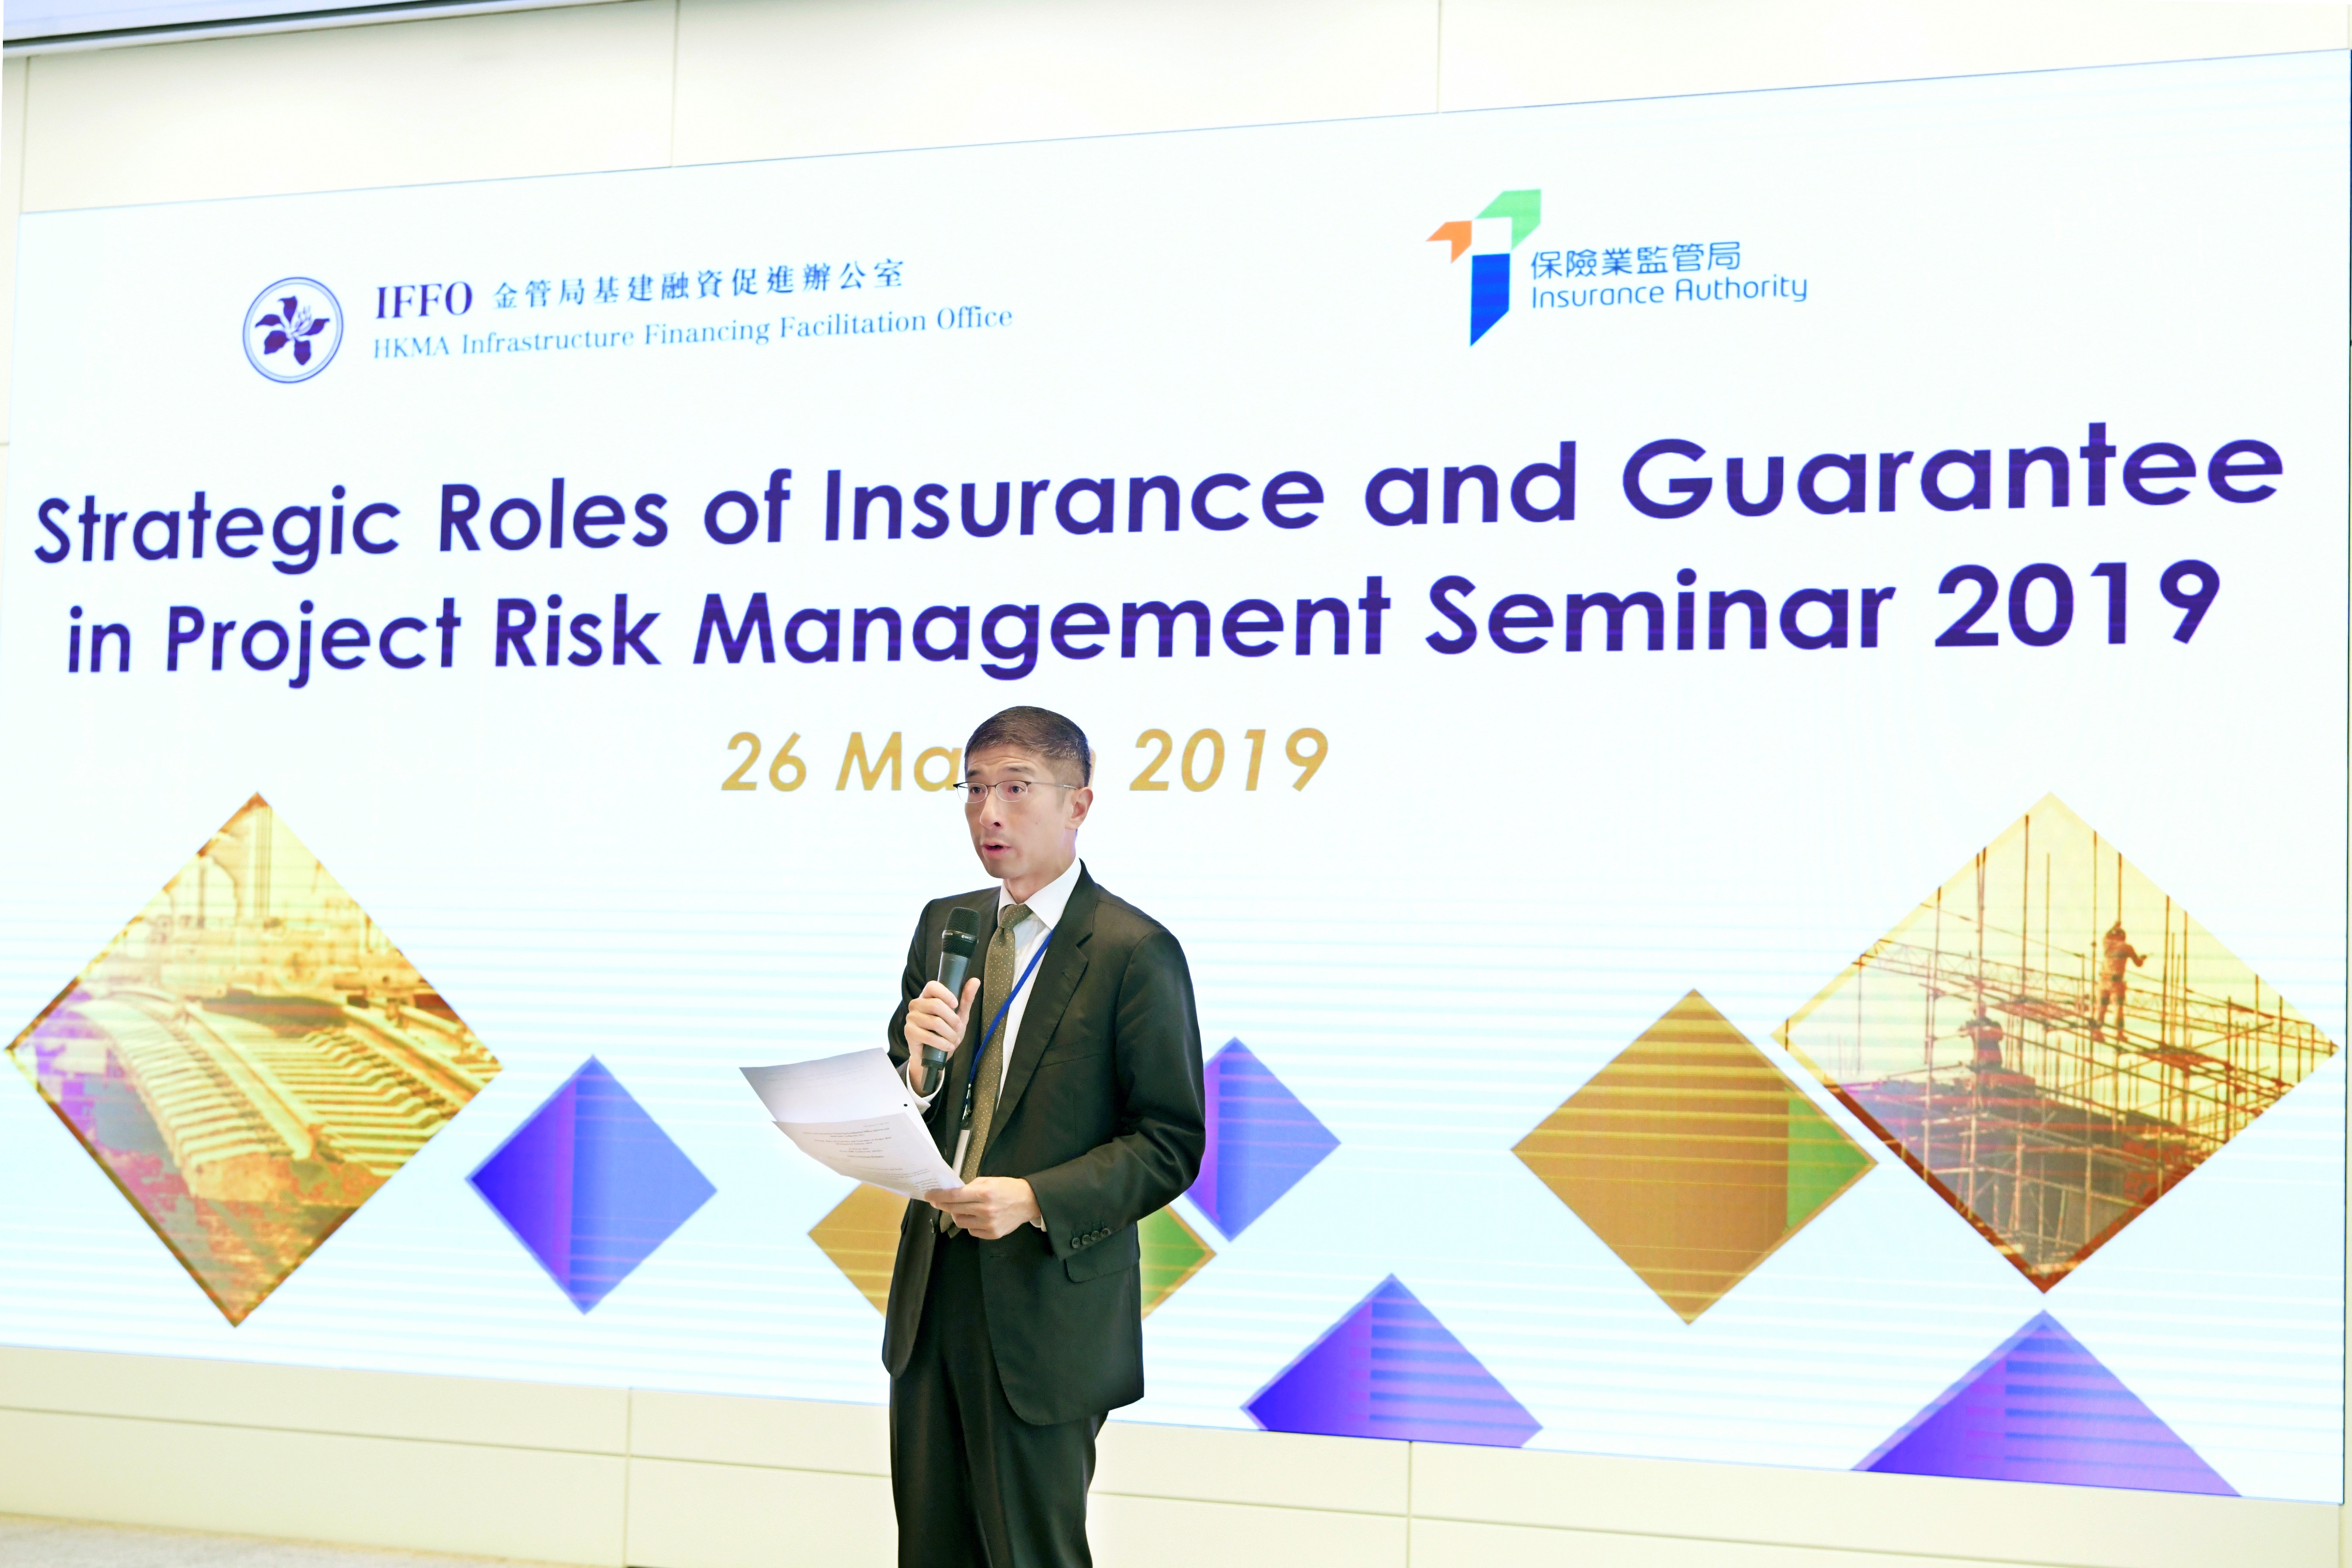 金管局助理總裁（外事）兼IFFO副主任李永誠先生致開幕辭並談及風險管理在促進基建投融資的重要性。